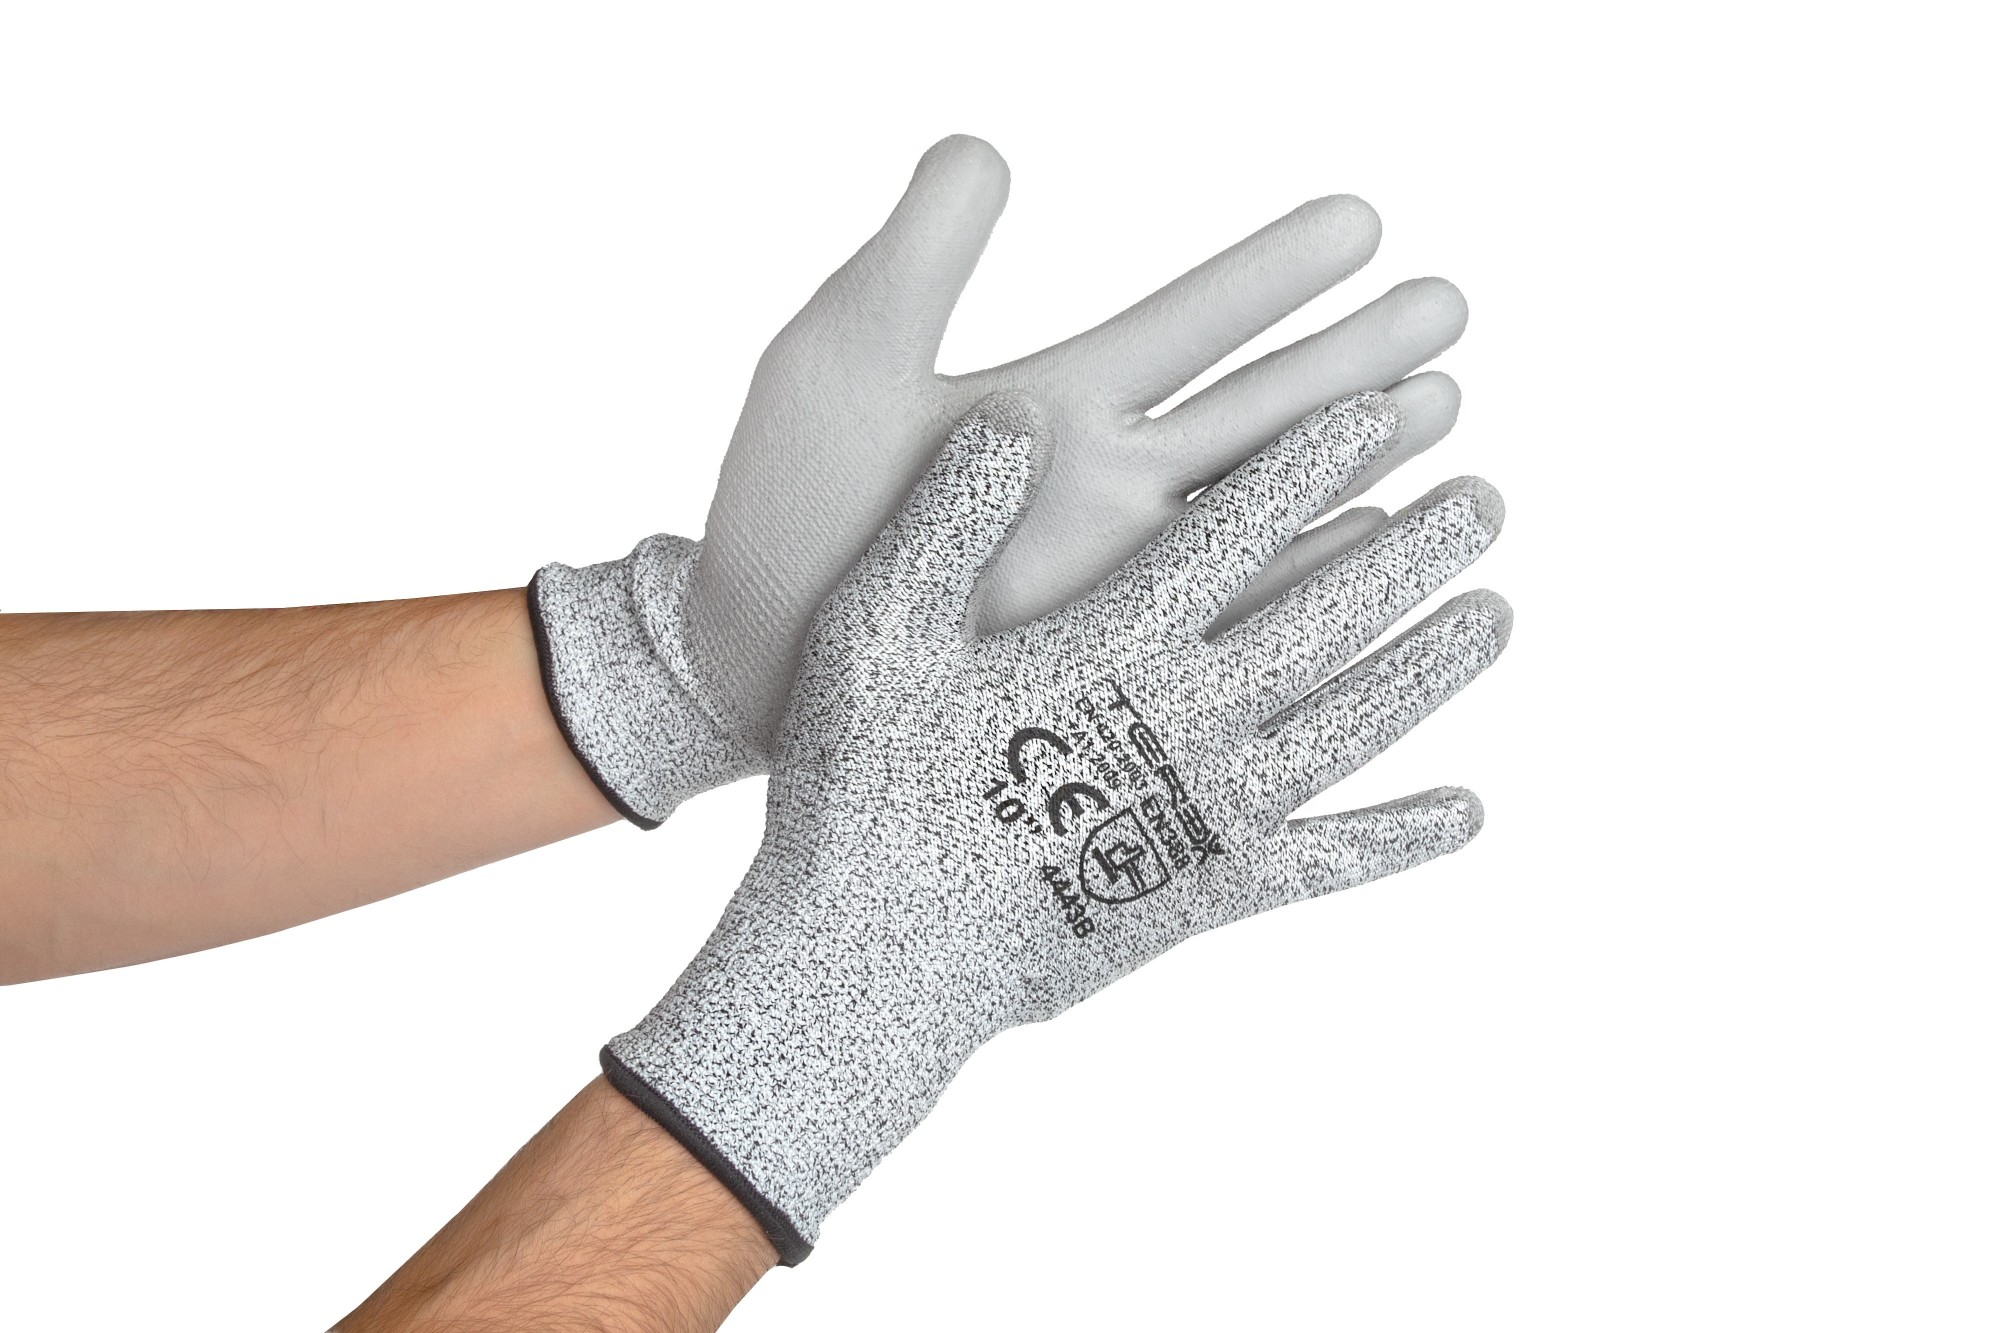  перчатки от порезов с полиуретановым покрытием Terex серые .